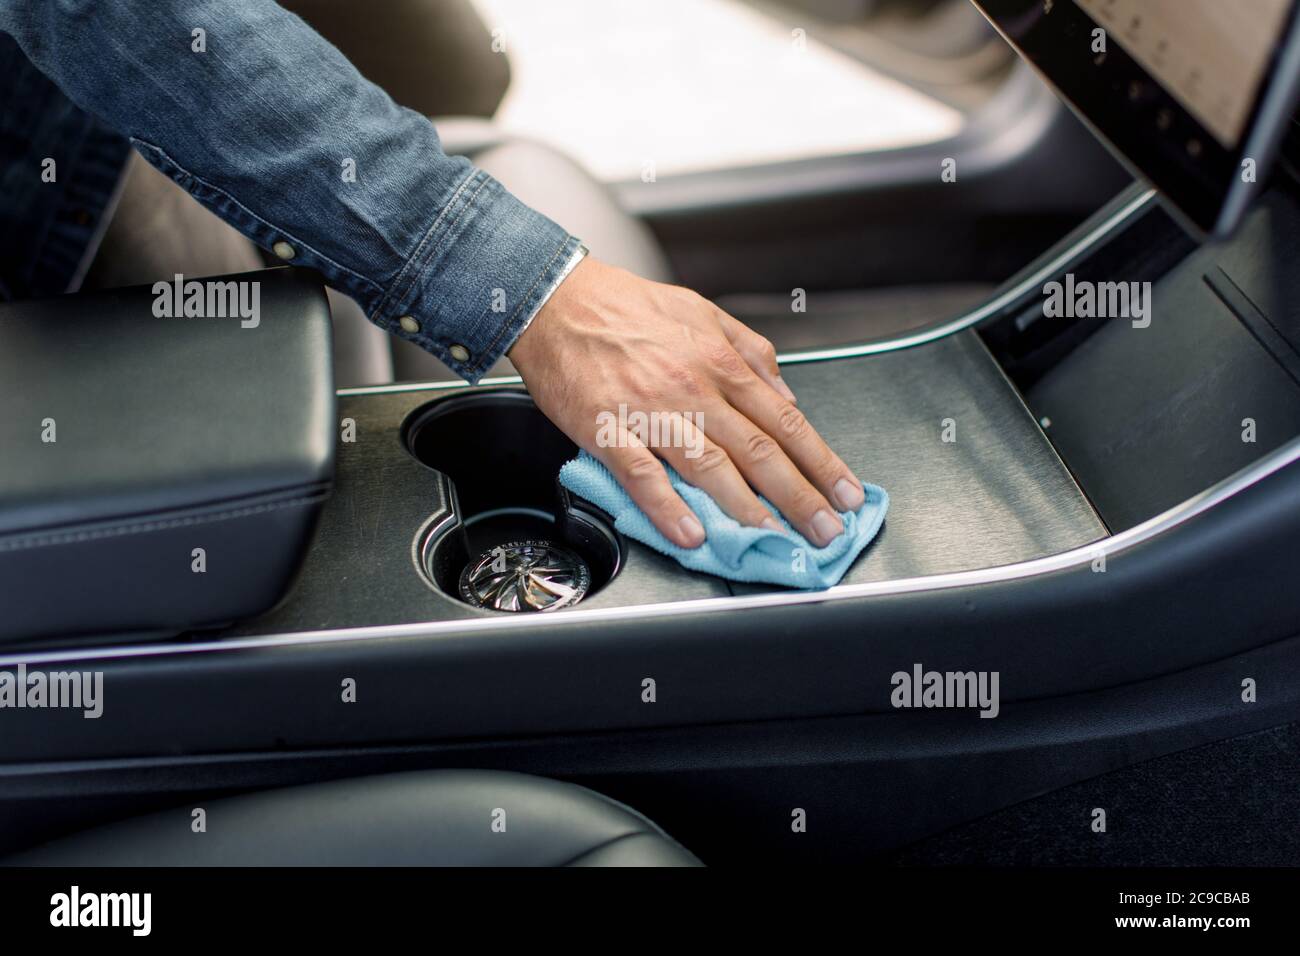 Reinigungsservice, Autoinnenreinigung. Beschnitten Nahaufnahme Bild der  männlichen Hand, Waschen eines Auto-Interieur mit Mikrofaser Tuch in  modernen Auto mit selbst Stockfotografie - Alamy